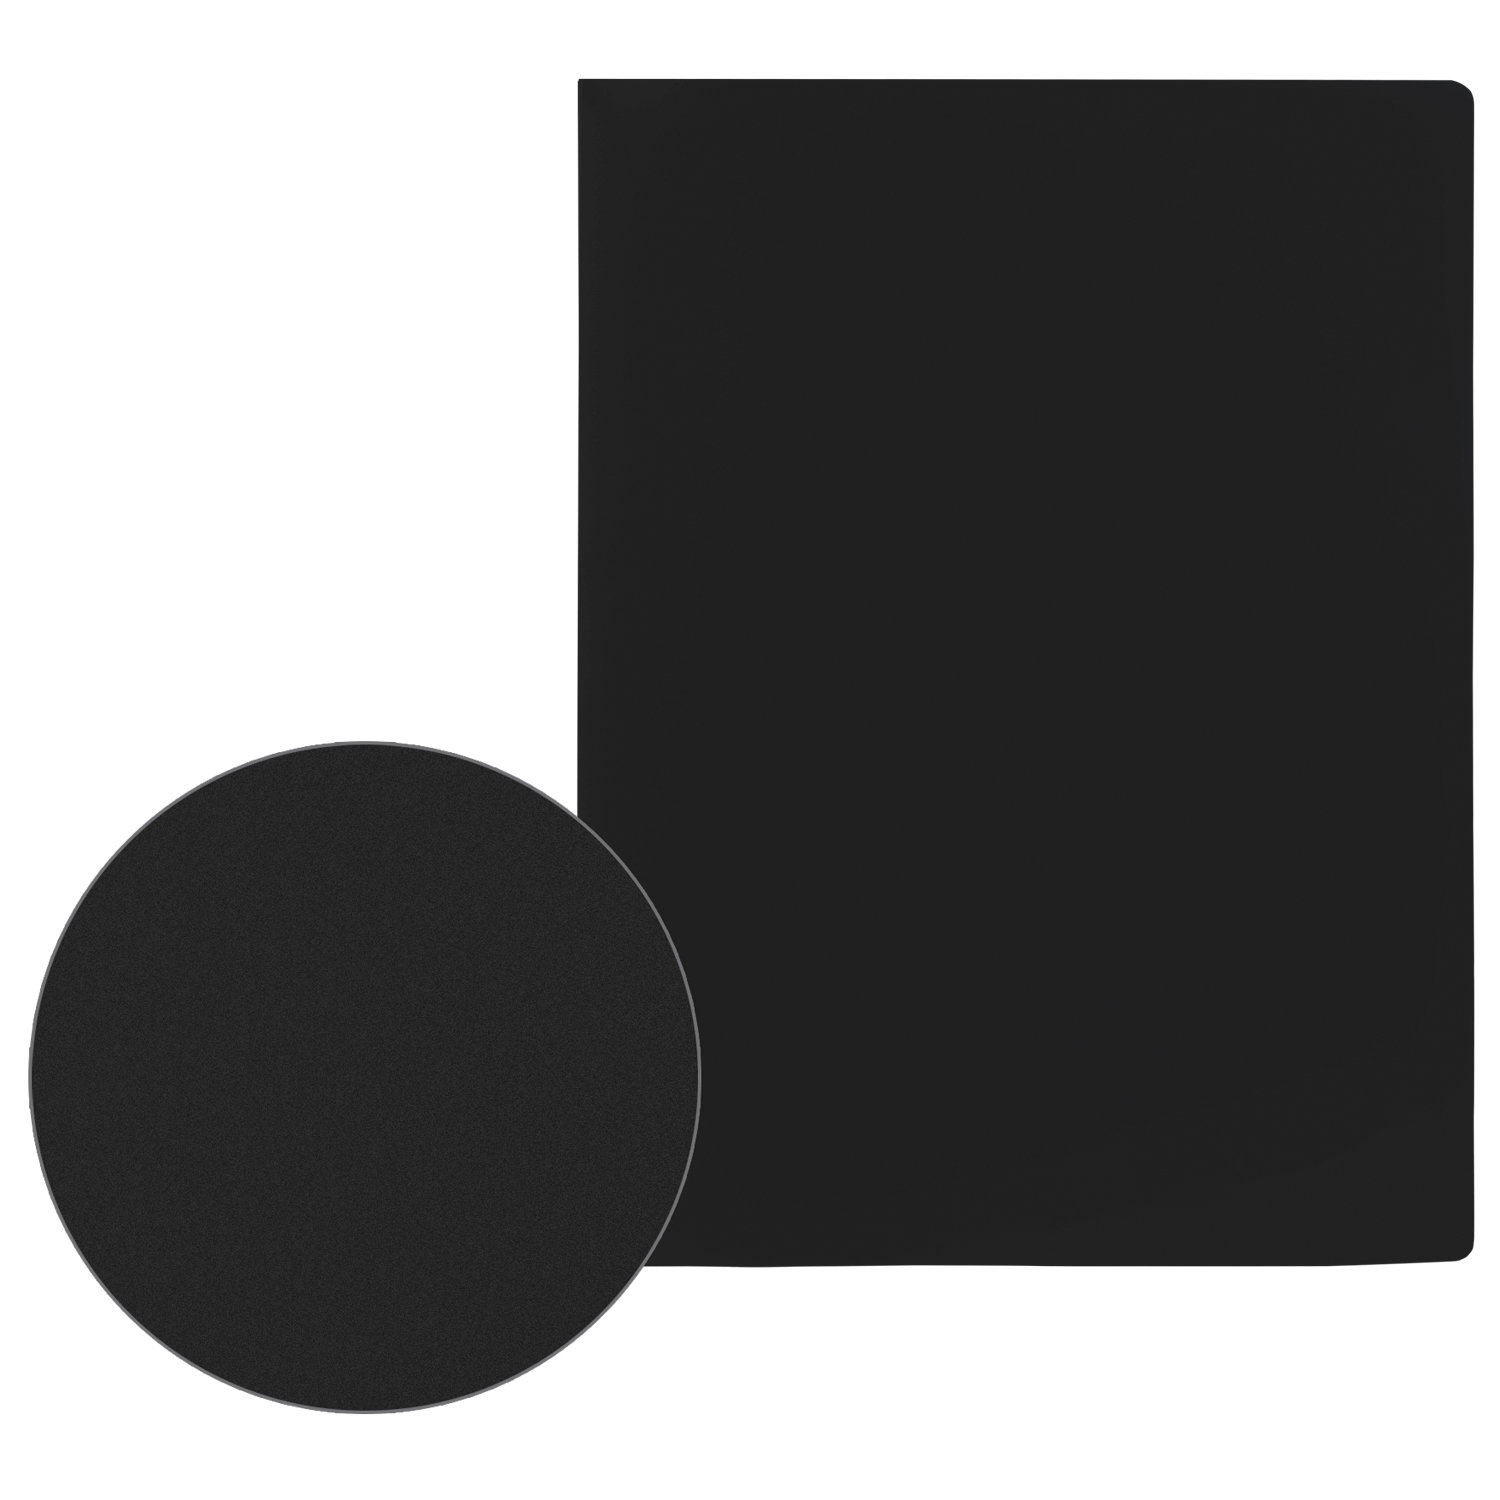 Папка 2 кольца STAFF эконом, 21мм, черная, до 80 листов, 0,5мм, 30255